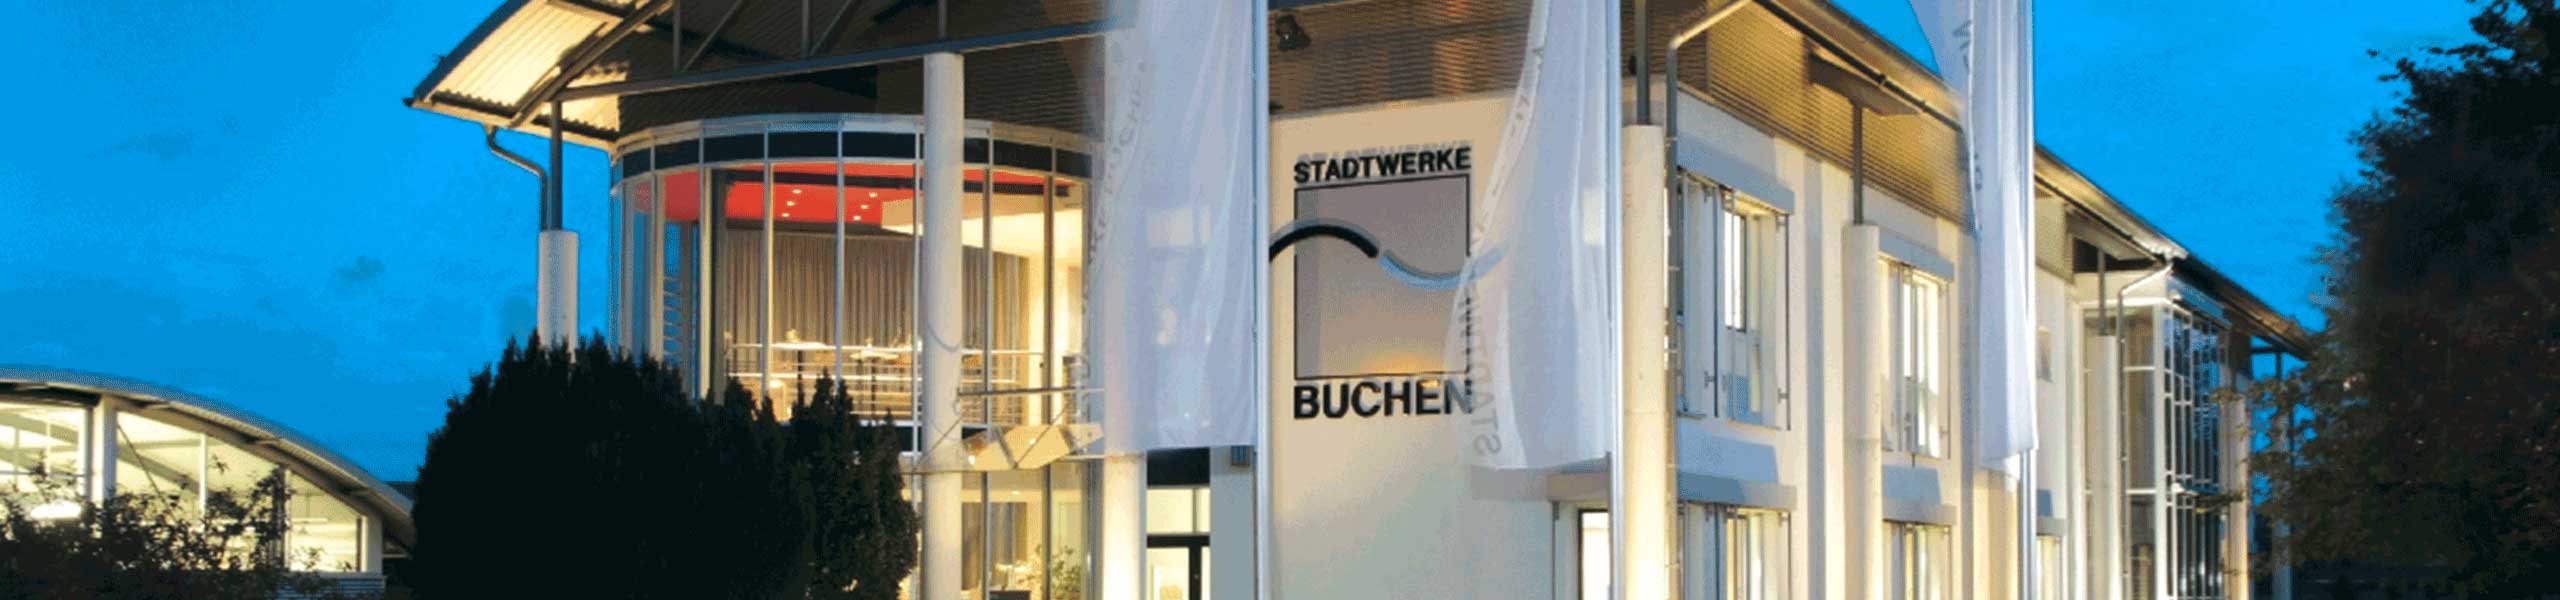 Stadtwerke Buchen GmbH & Co KG - Stellenangebote